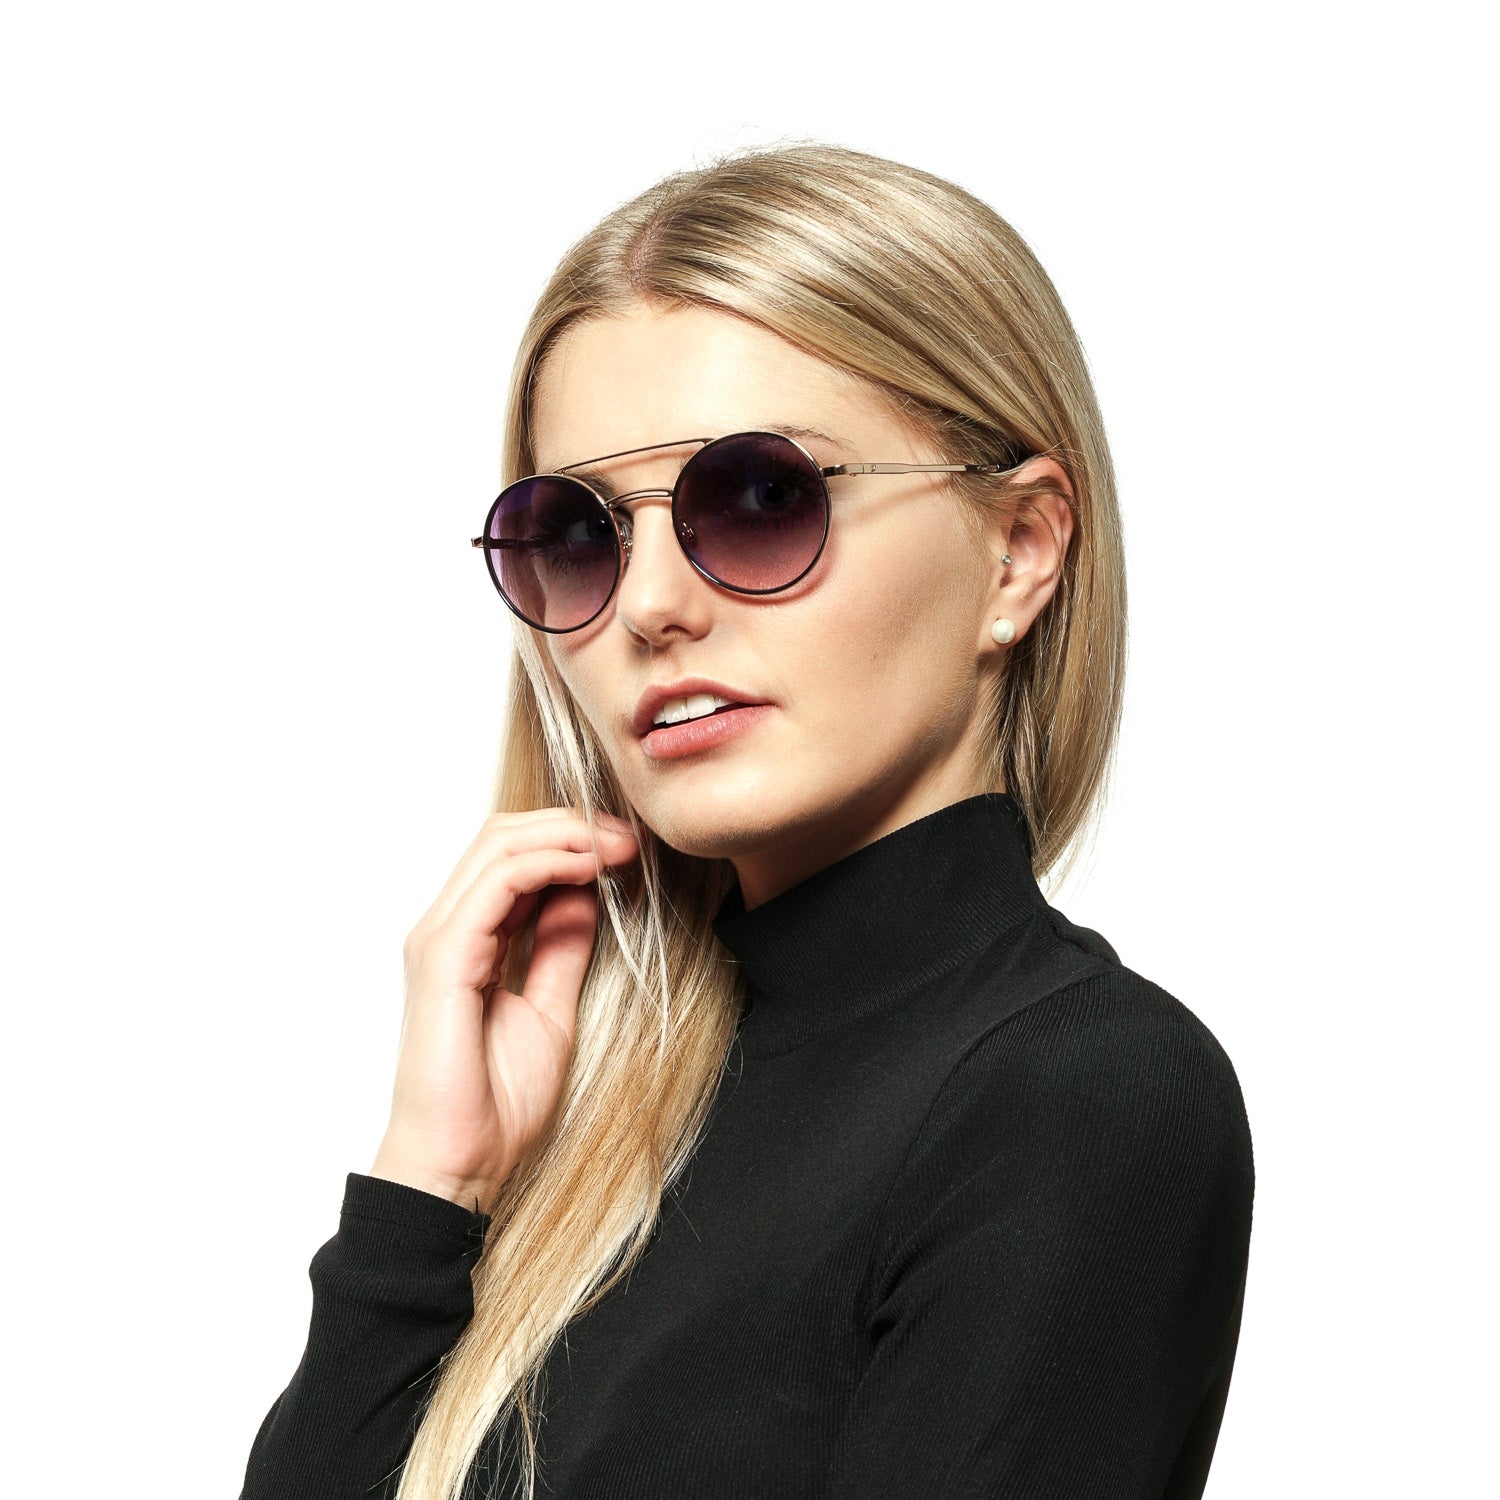 Web Gold Sunglasses for Woman - Fizigo